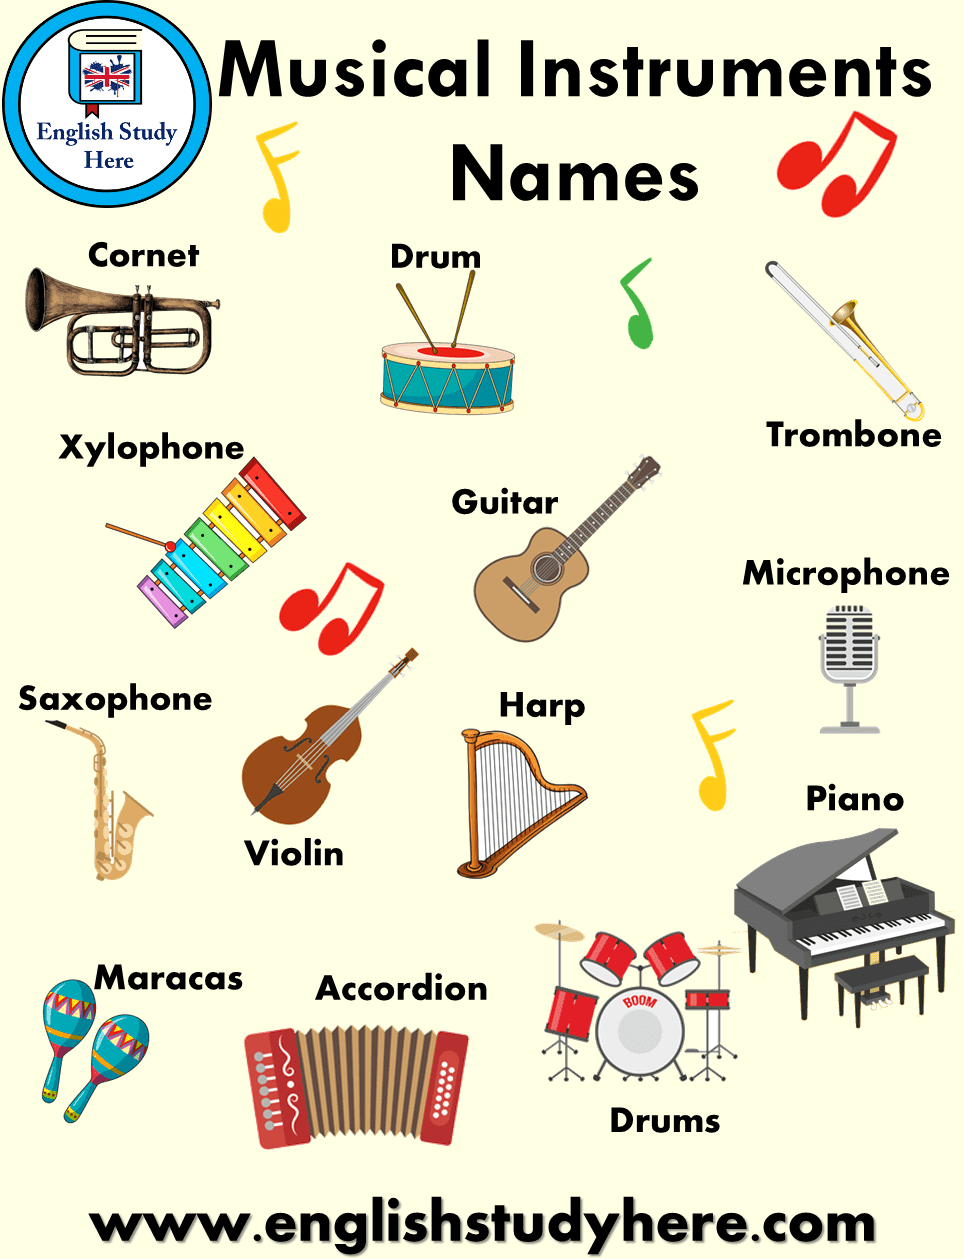 Как будет музыка на английском. Музыкальные инструменты на английском. Музыкальные инструменты на английском для детей. Музыкальные инструменты на анг. Название музыкальных инструментов на англ.